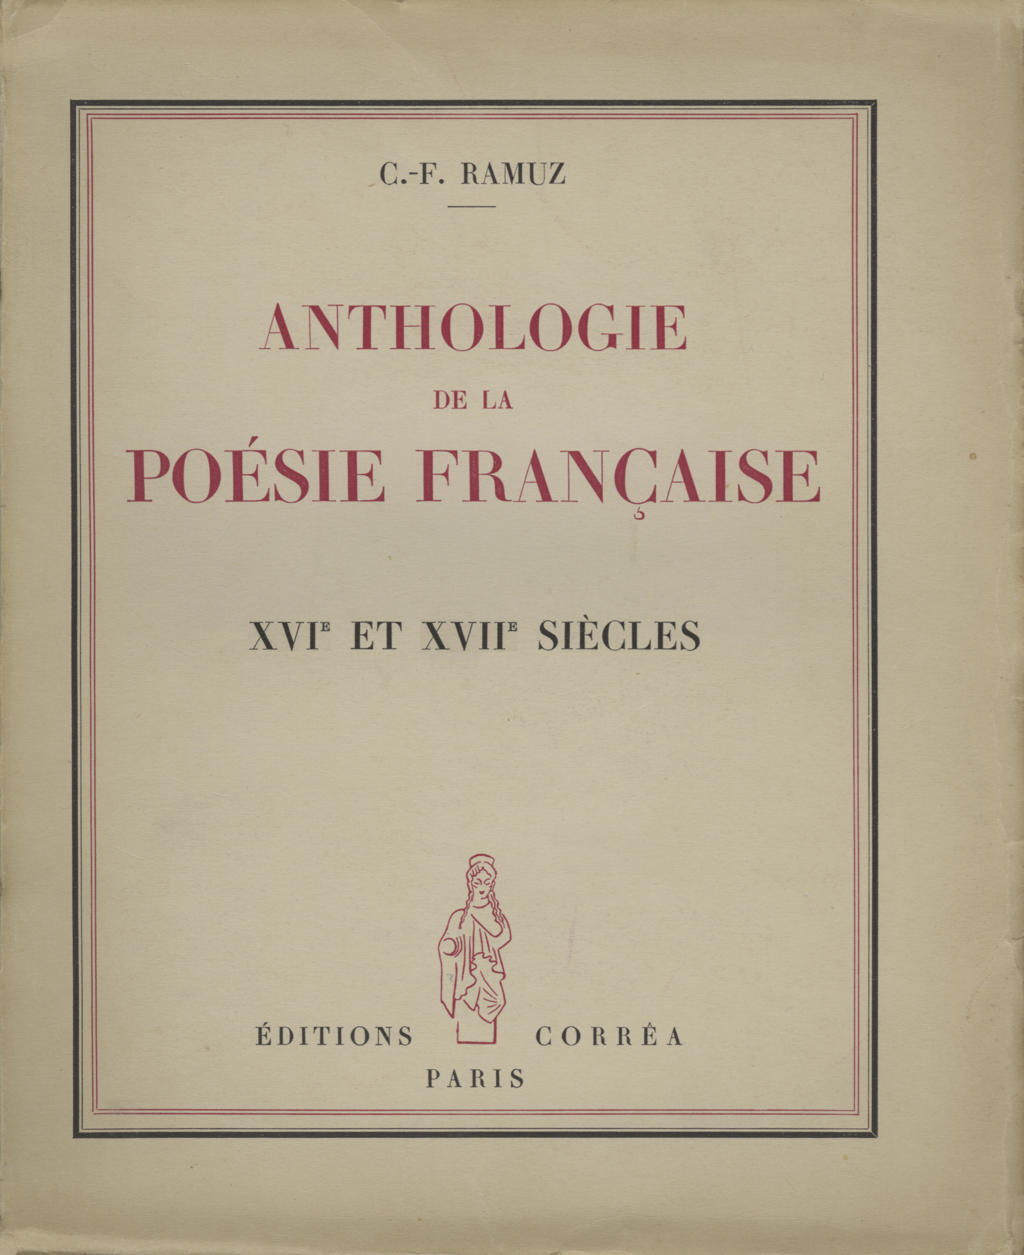 C.F. Ramuz, Anthologie de la Poésie française, 1943